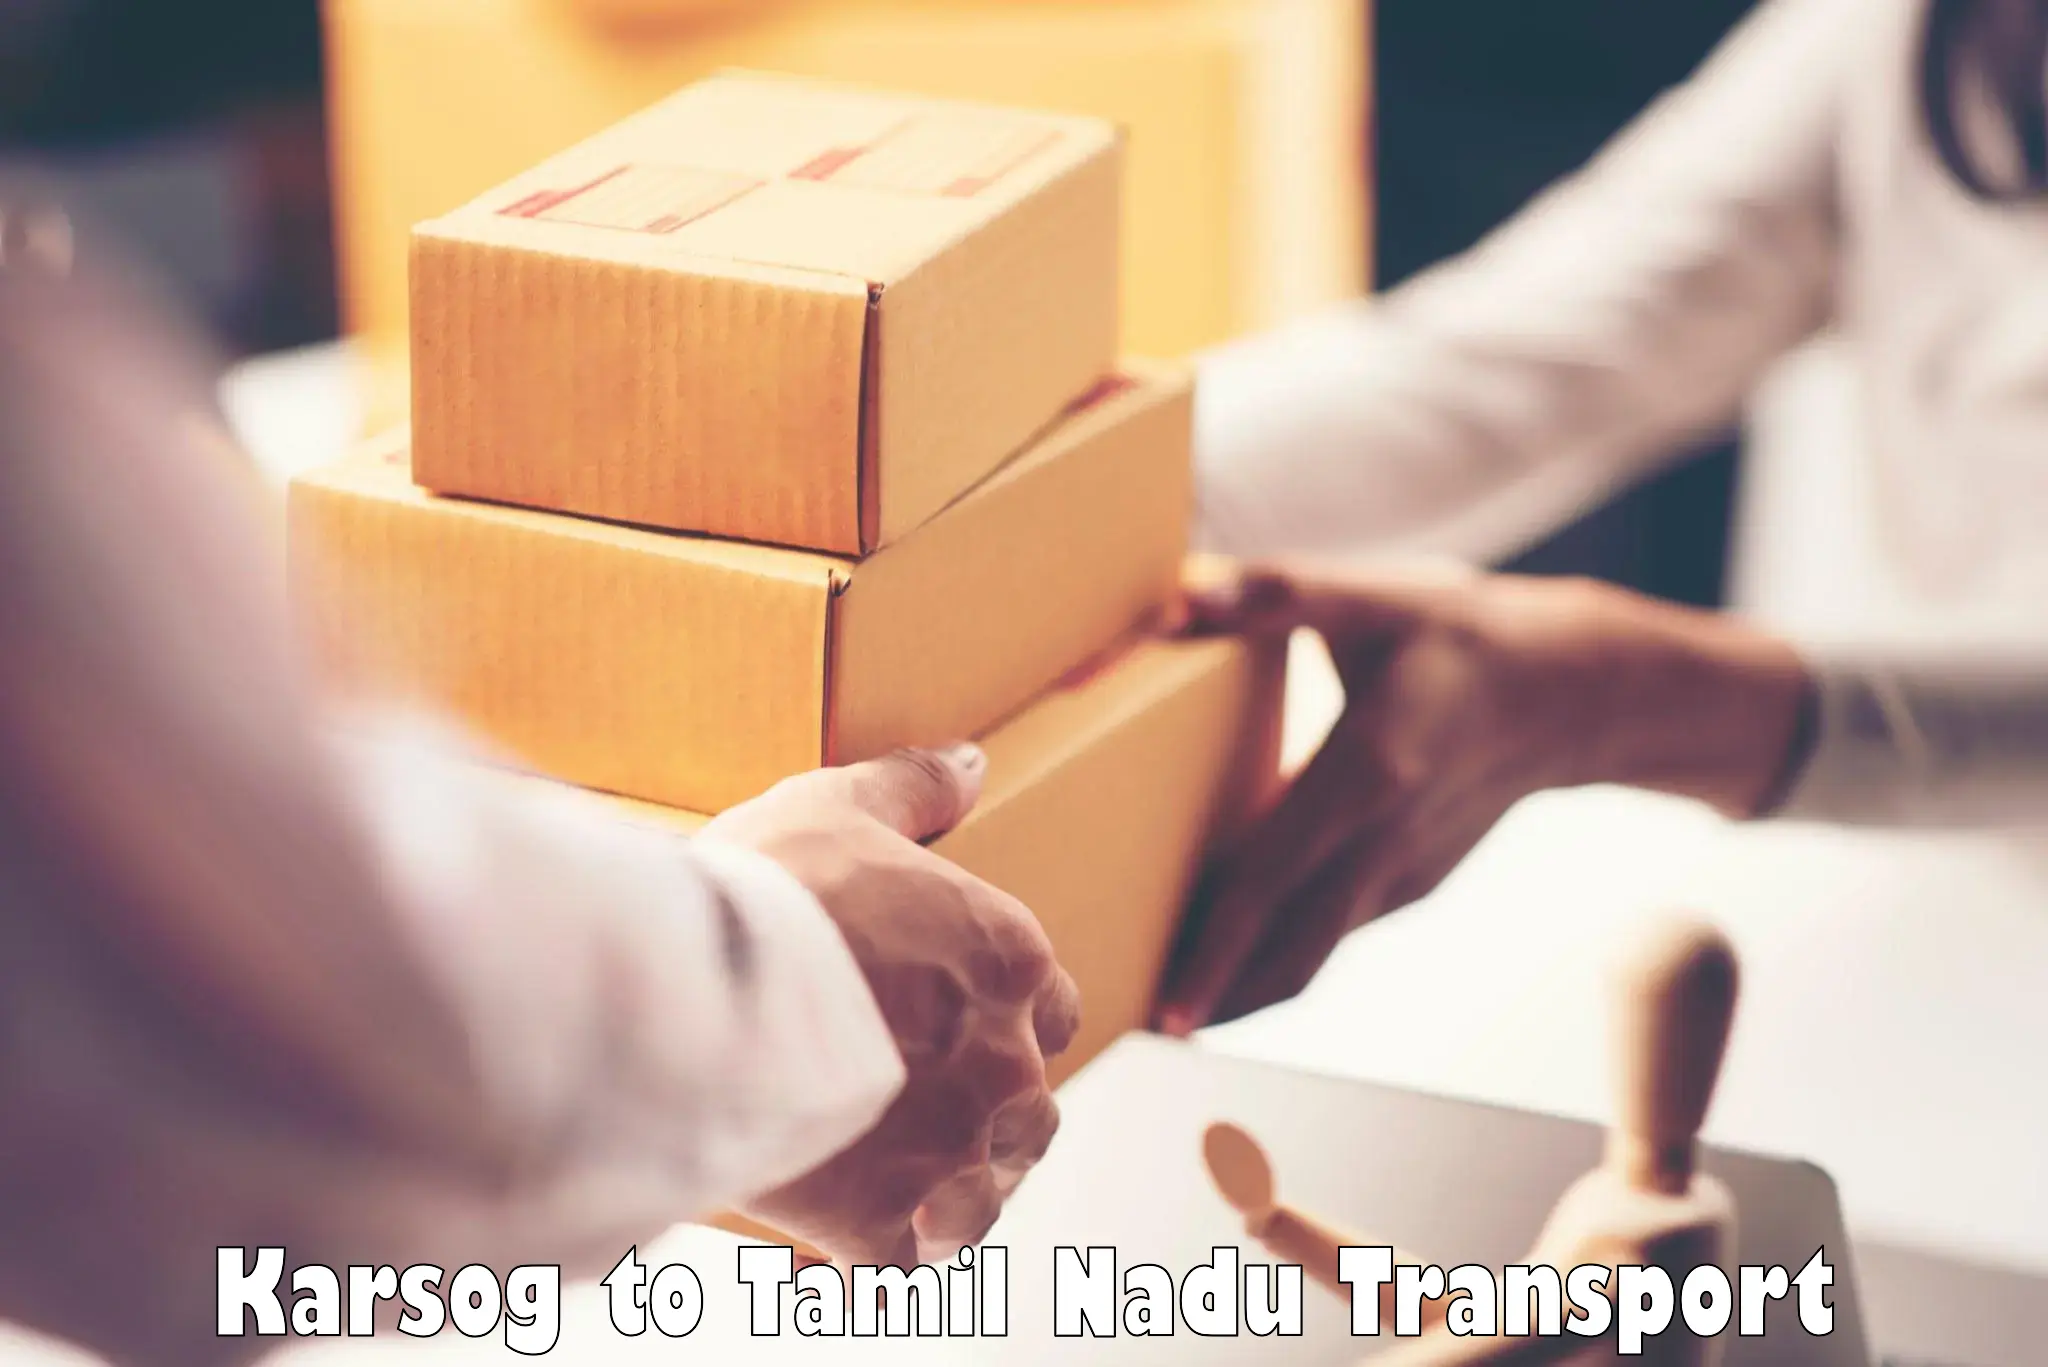 Luggage transport services Karsog to Tirupattur